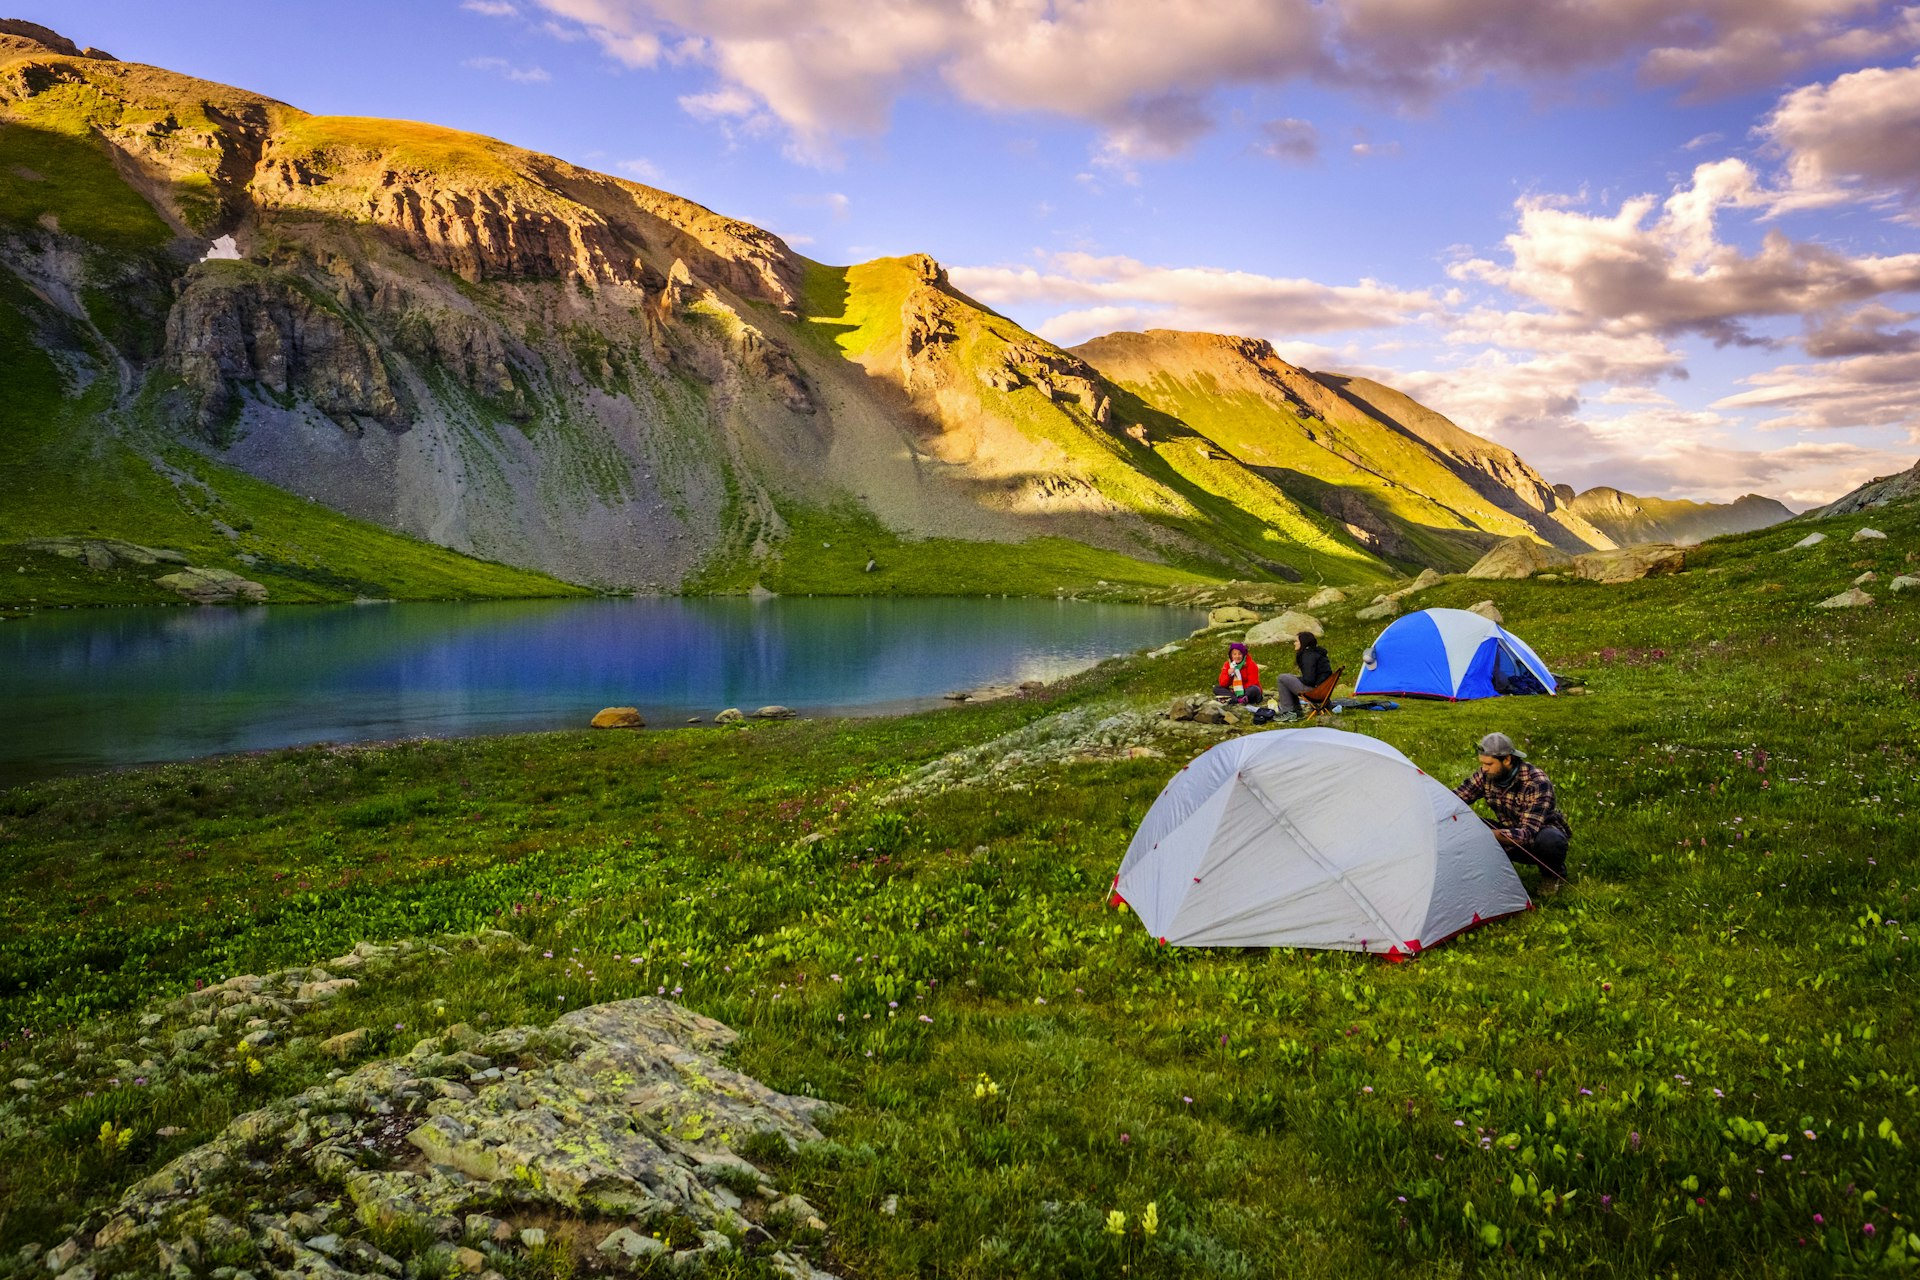 camping out at Ice Lake, Colorado